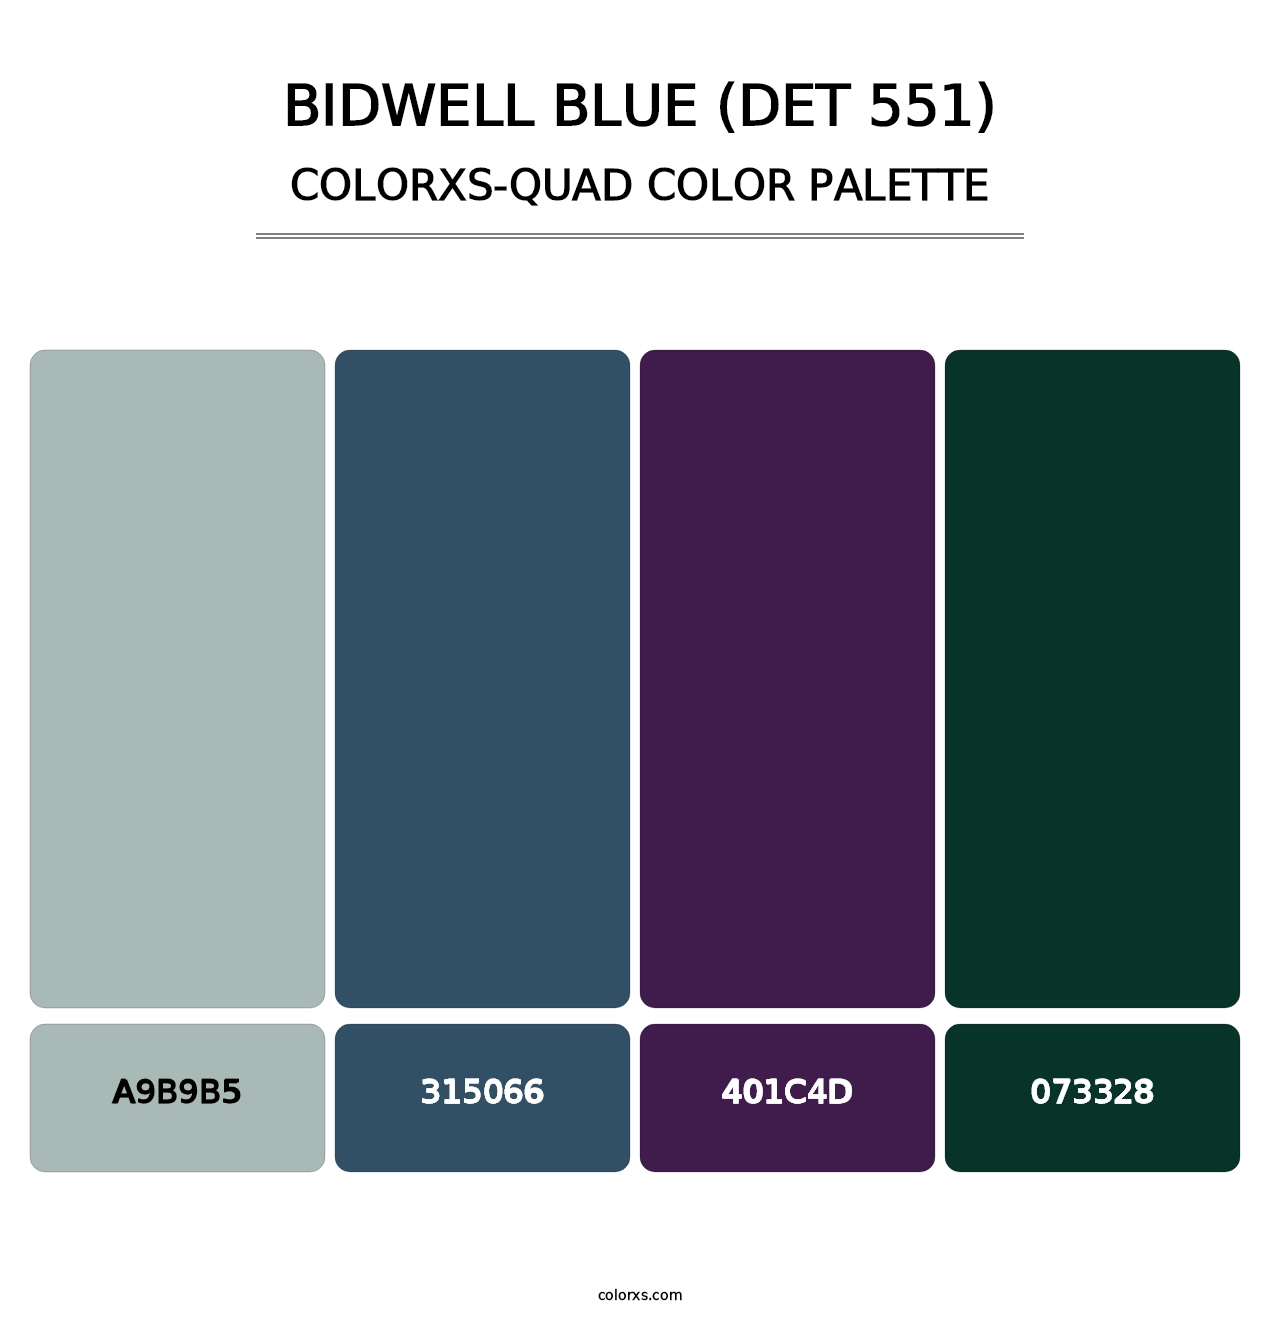 Bidwell Blue (DET 551) - Colorxs Quad Palette